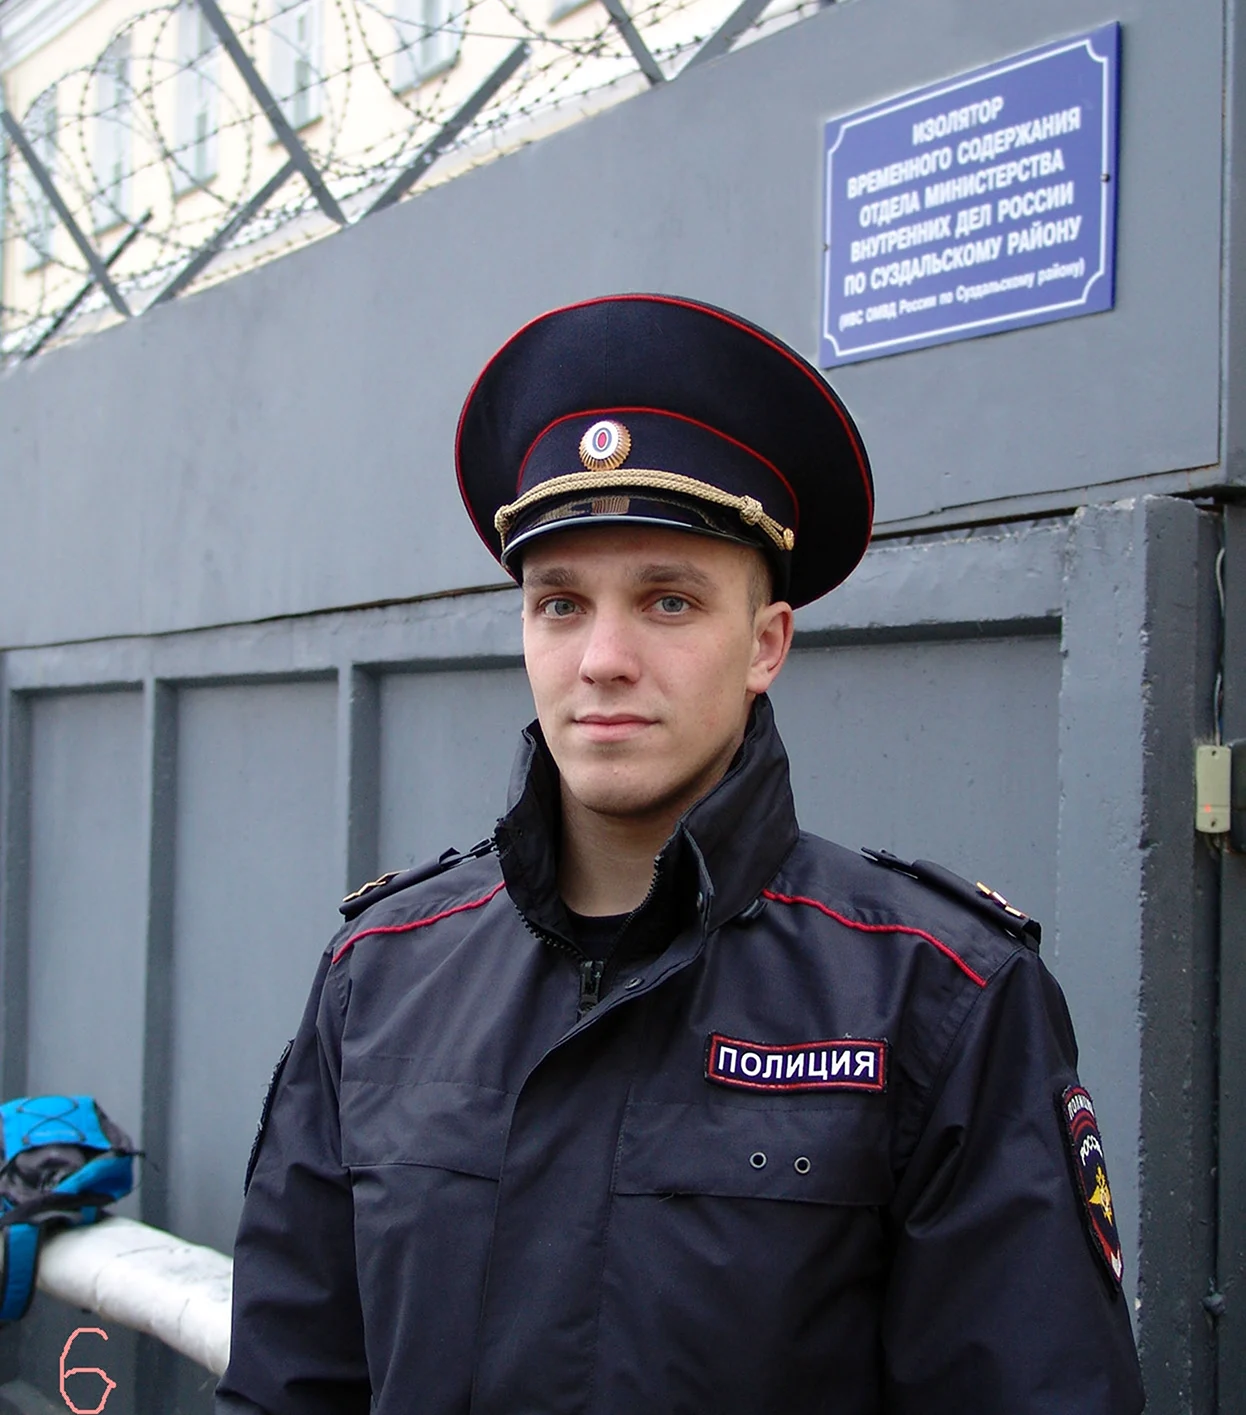 Российский полицейский. Красивая картинка